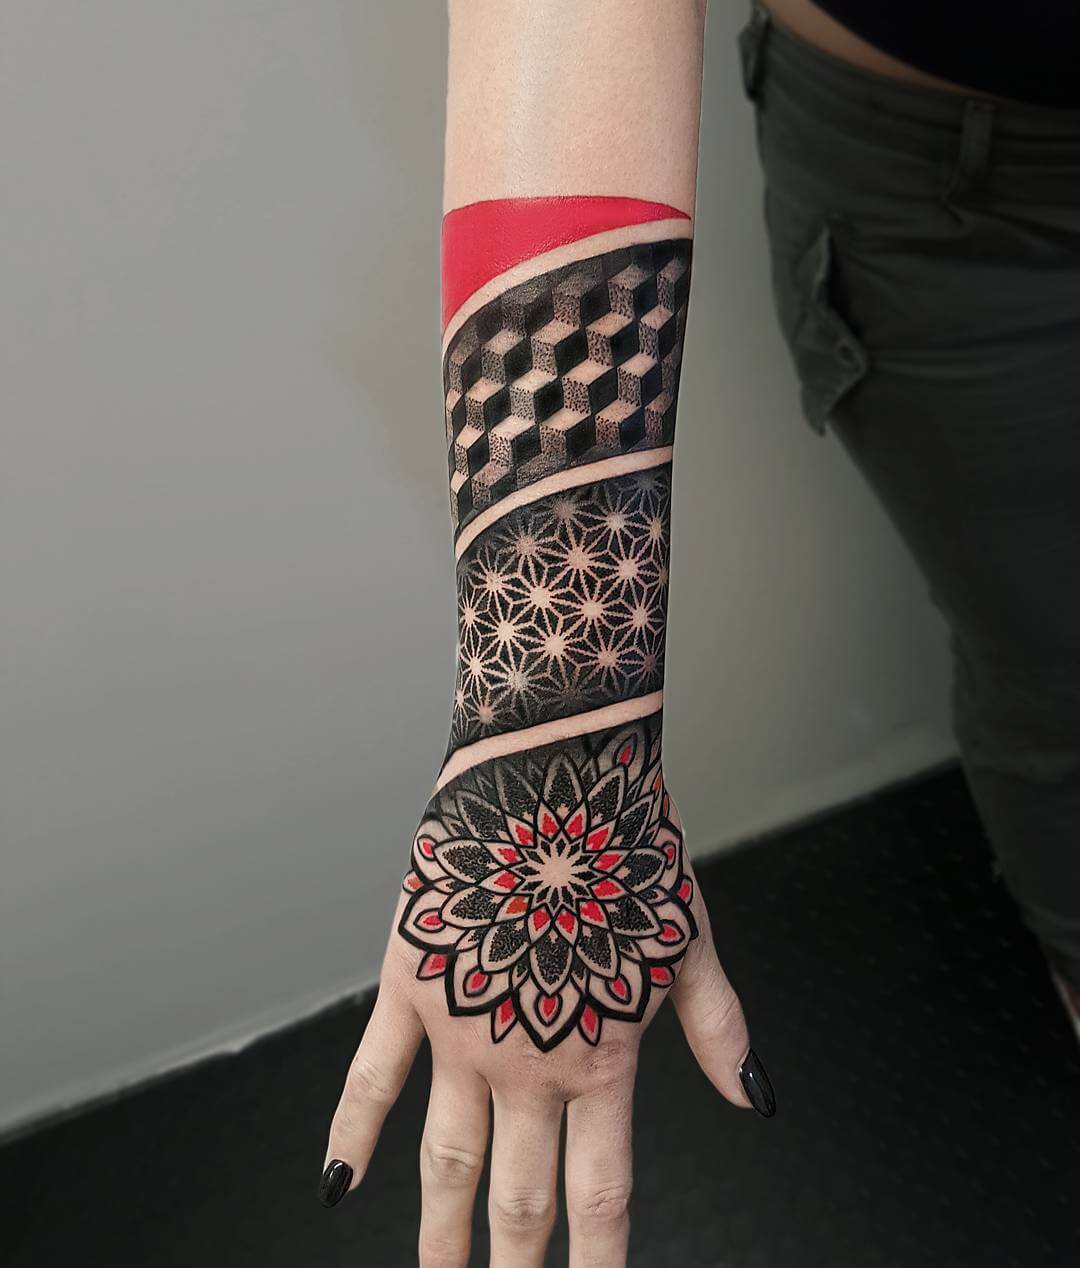 Geometric hand tattoo by matteonangeroni